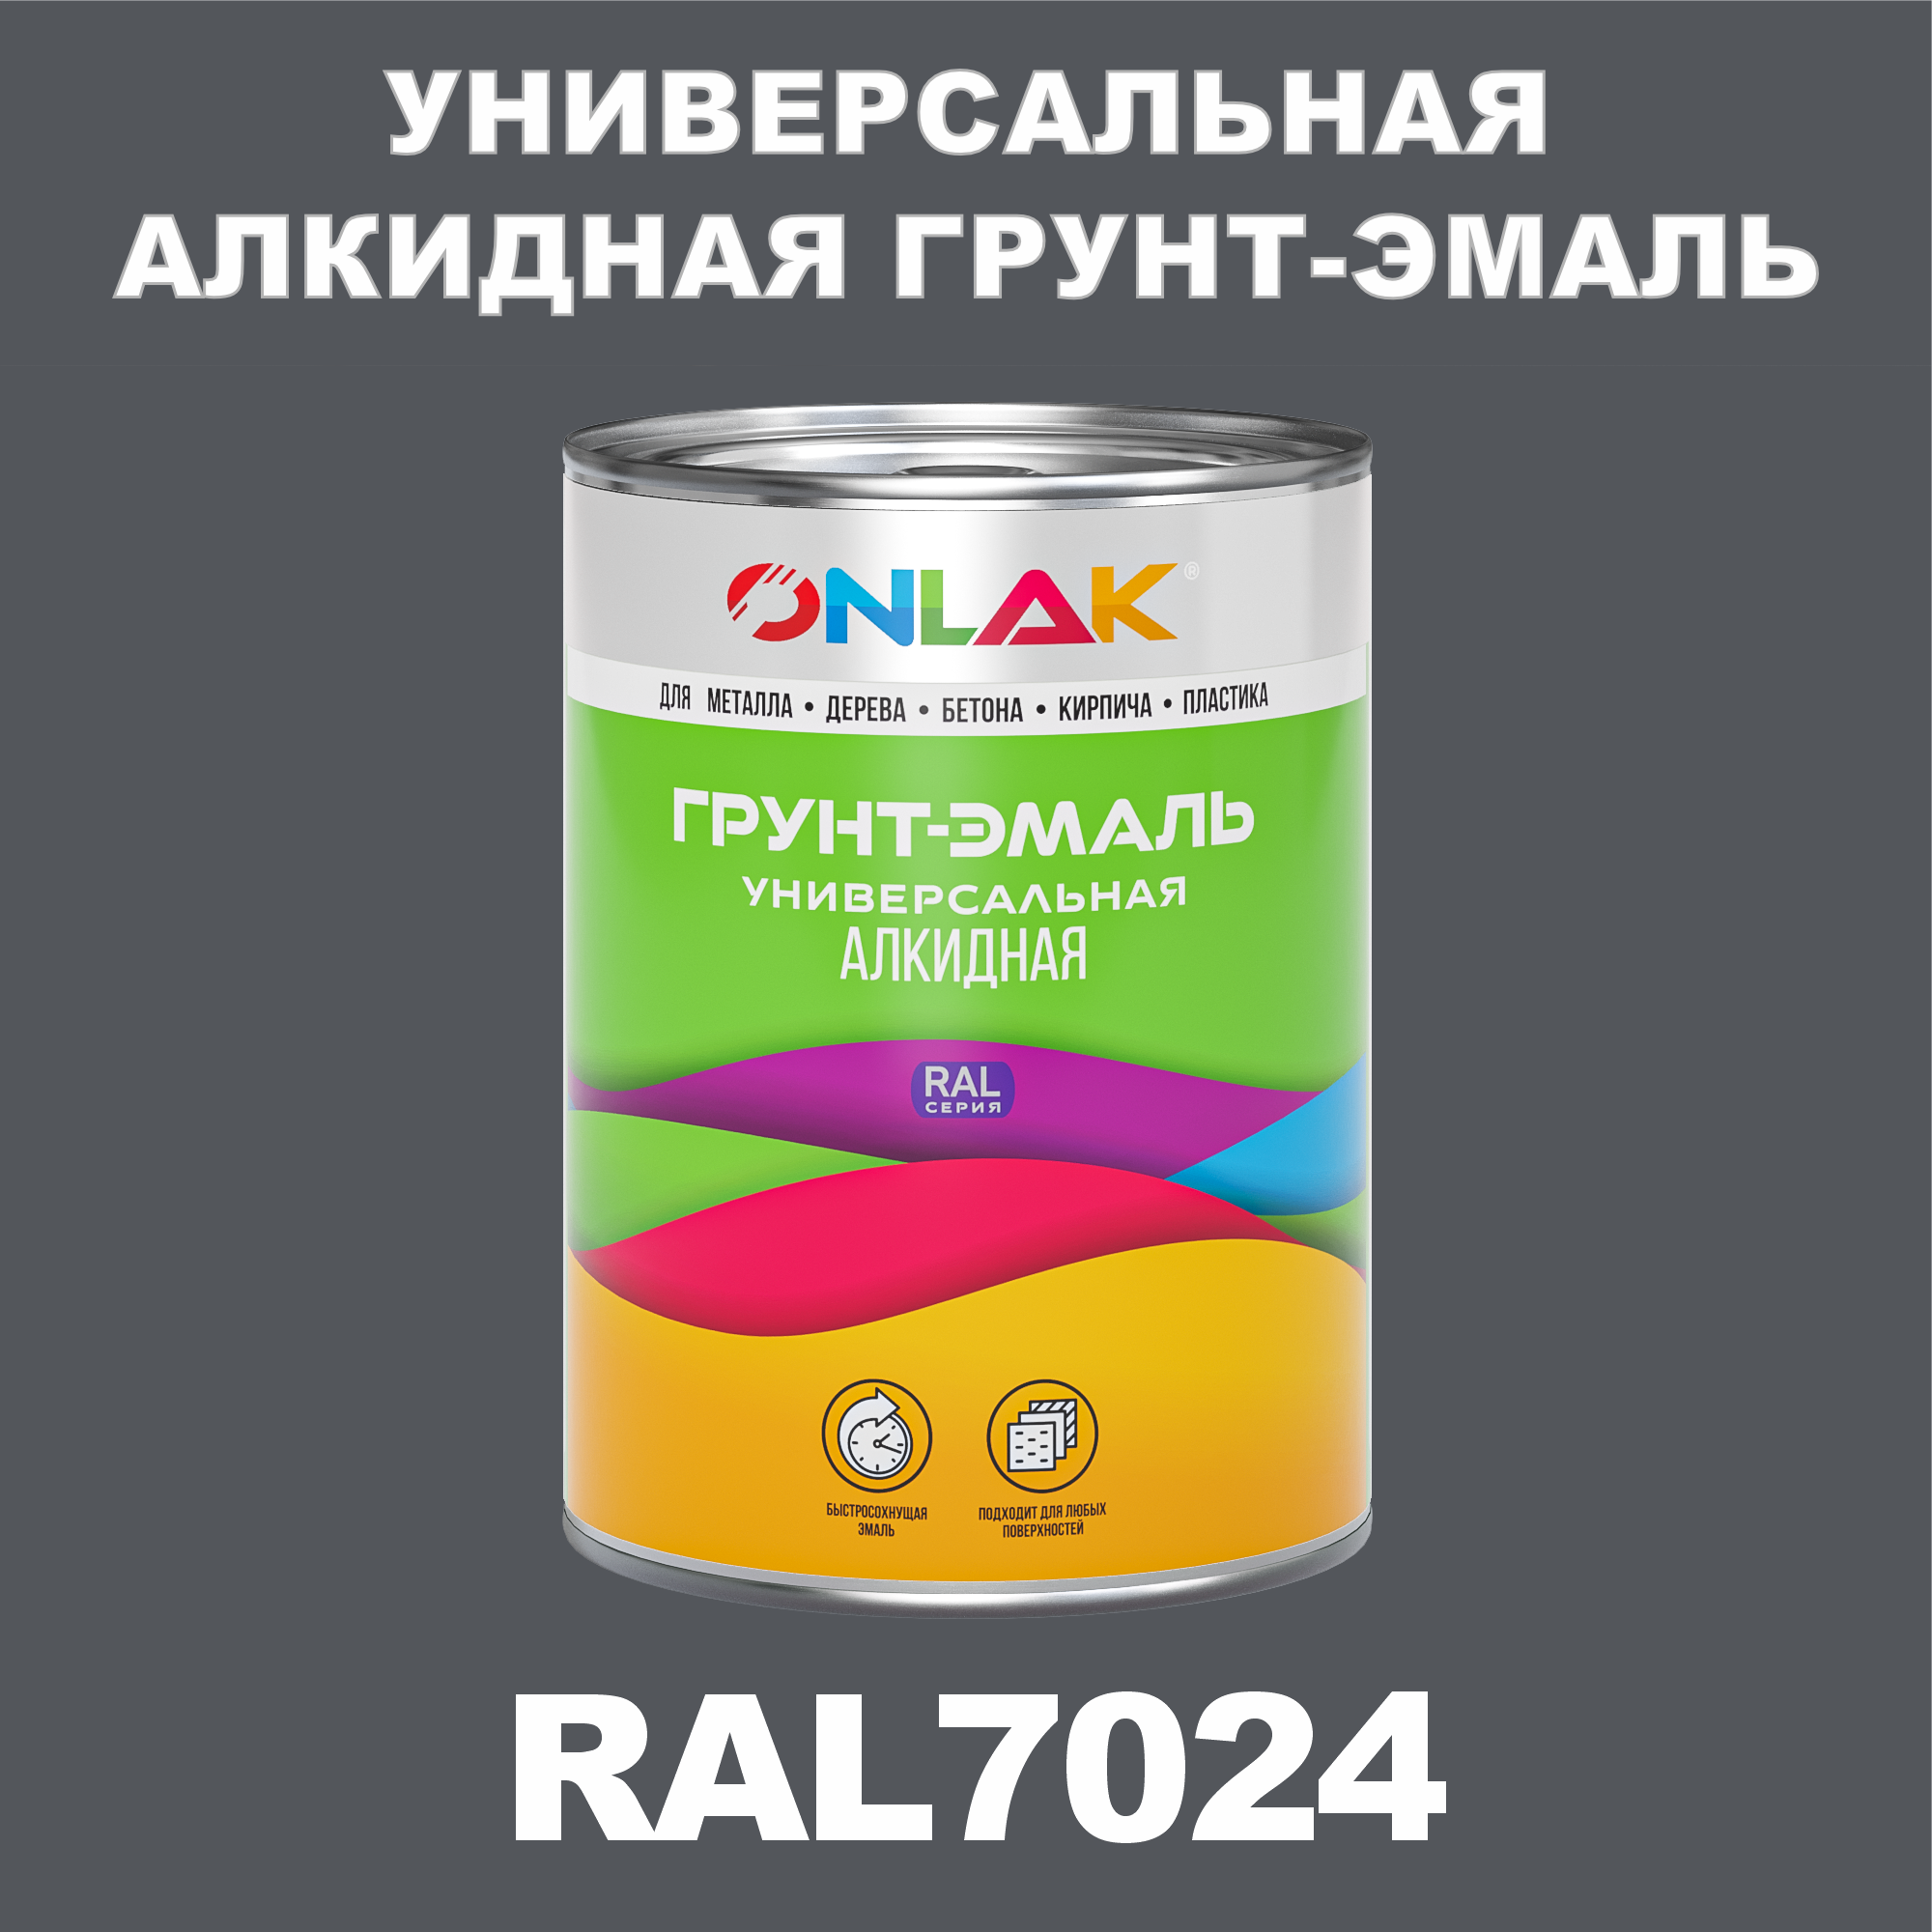 Грунт-эмаль ONLAK 1К RAL7024 антикоррозионная алкидная по металлу по ржавчине 1 кг грунт эмаль аэрозольная престиж 3в1 алкидная коричневая ral 8017 425 мл 0 425 кг